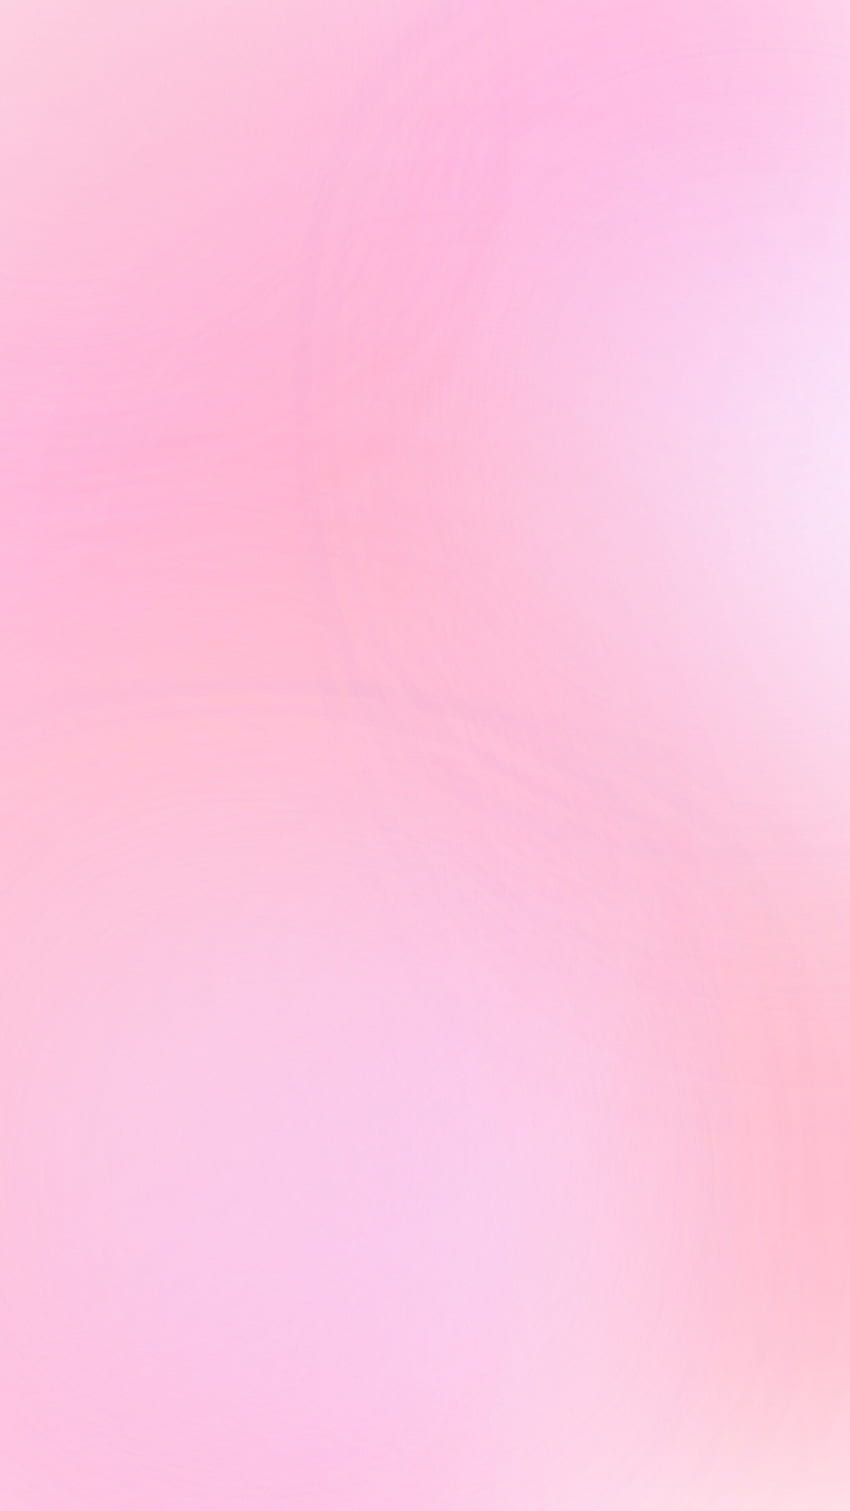 Hình nền điện thoại màu hồng pastel ombre HD từ Pxfuel sẽ khiến mọi người ghen tị với sự độc đáo và nổi bật của màn hình của bạn. Với sự kết hợp giữa các màu sáng và Gradient tinh tế, hình nền này chắc chắn sẽ thu hút mọi ánh nhìn và khiến bạn cảm thấy thật phong cách.